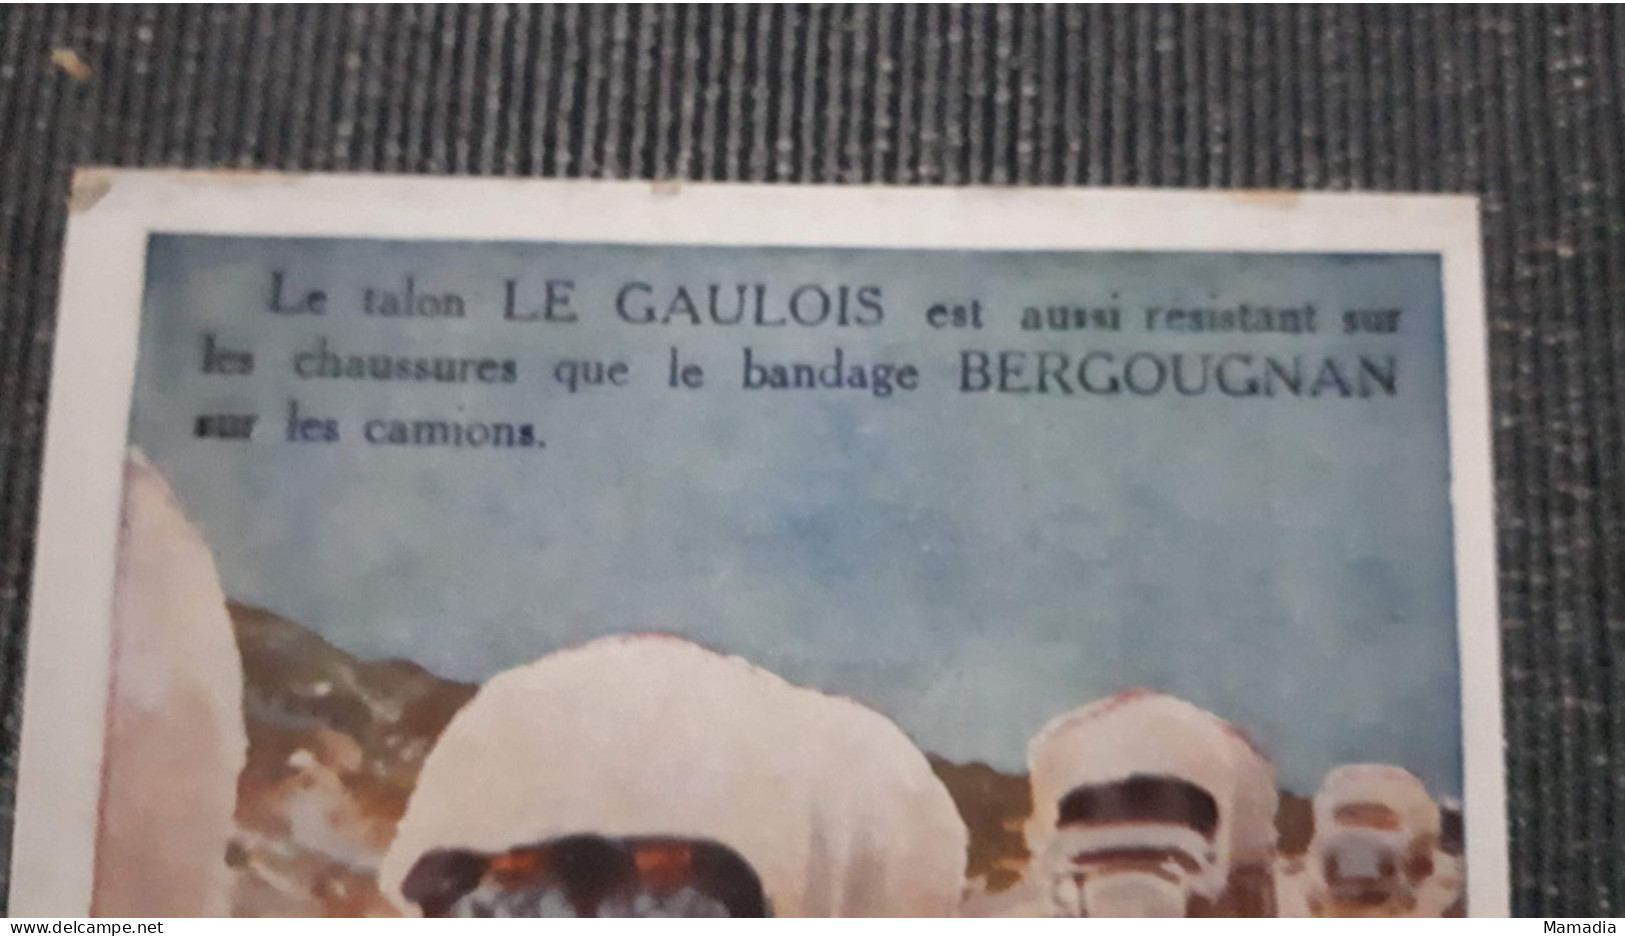 CARTE PUBLICITAIRE CAOUTCHOUC BANDAGES ETS BERGOUGNAN TALON LE GAULOIS  T. SALA - Werbepostkarten